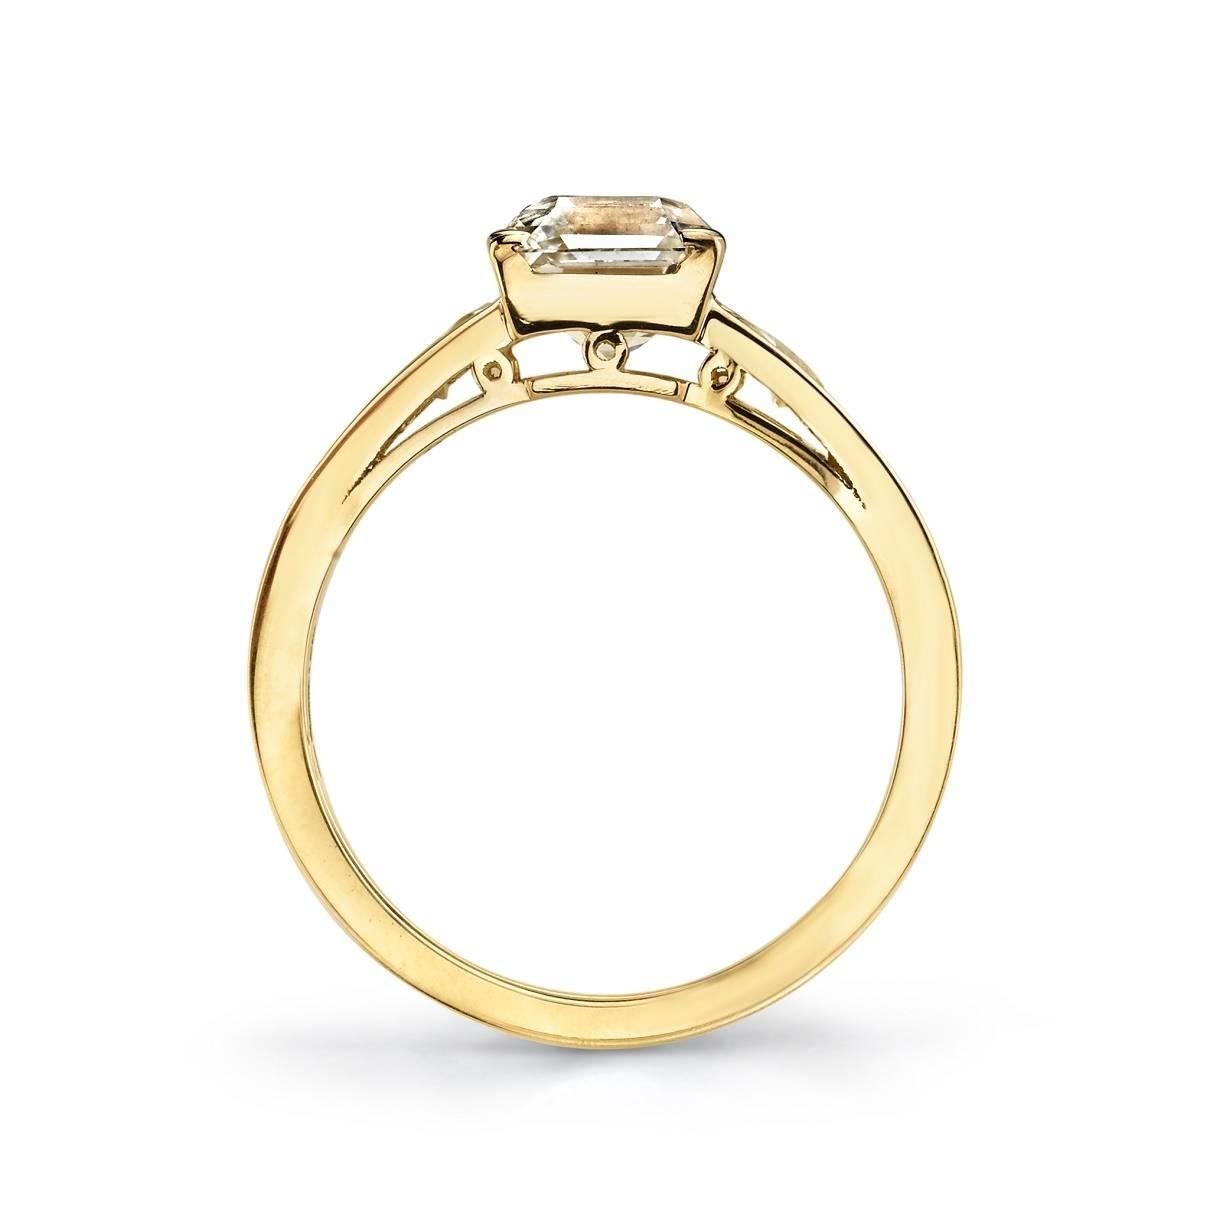 Contemporary Asscher Cut Diamond Yellow Gold Engagement Ring